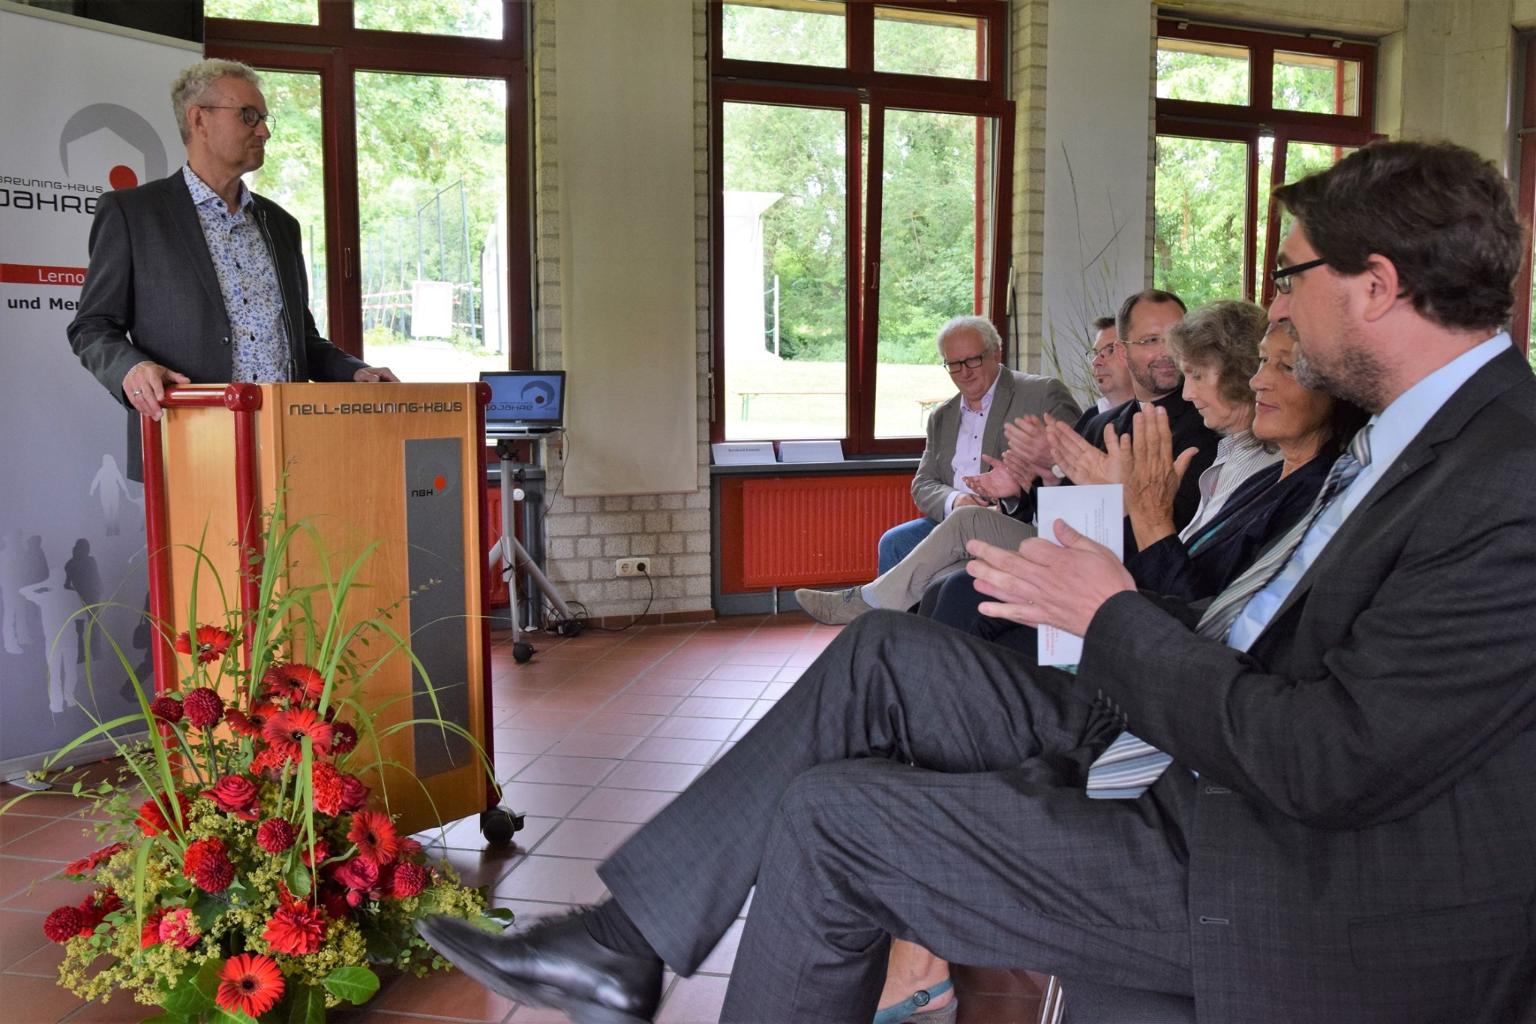 Dr. Manfred Körber, Leiter des Hauses, begrüßte die Gäste. (c) Thomas Hohenschue